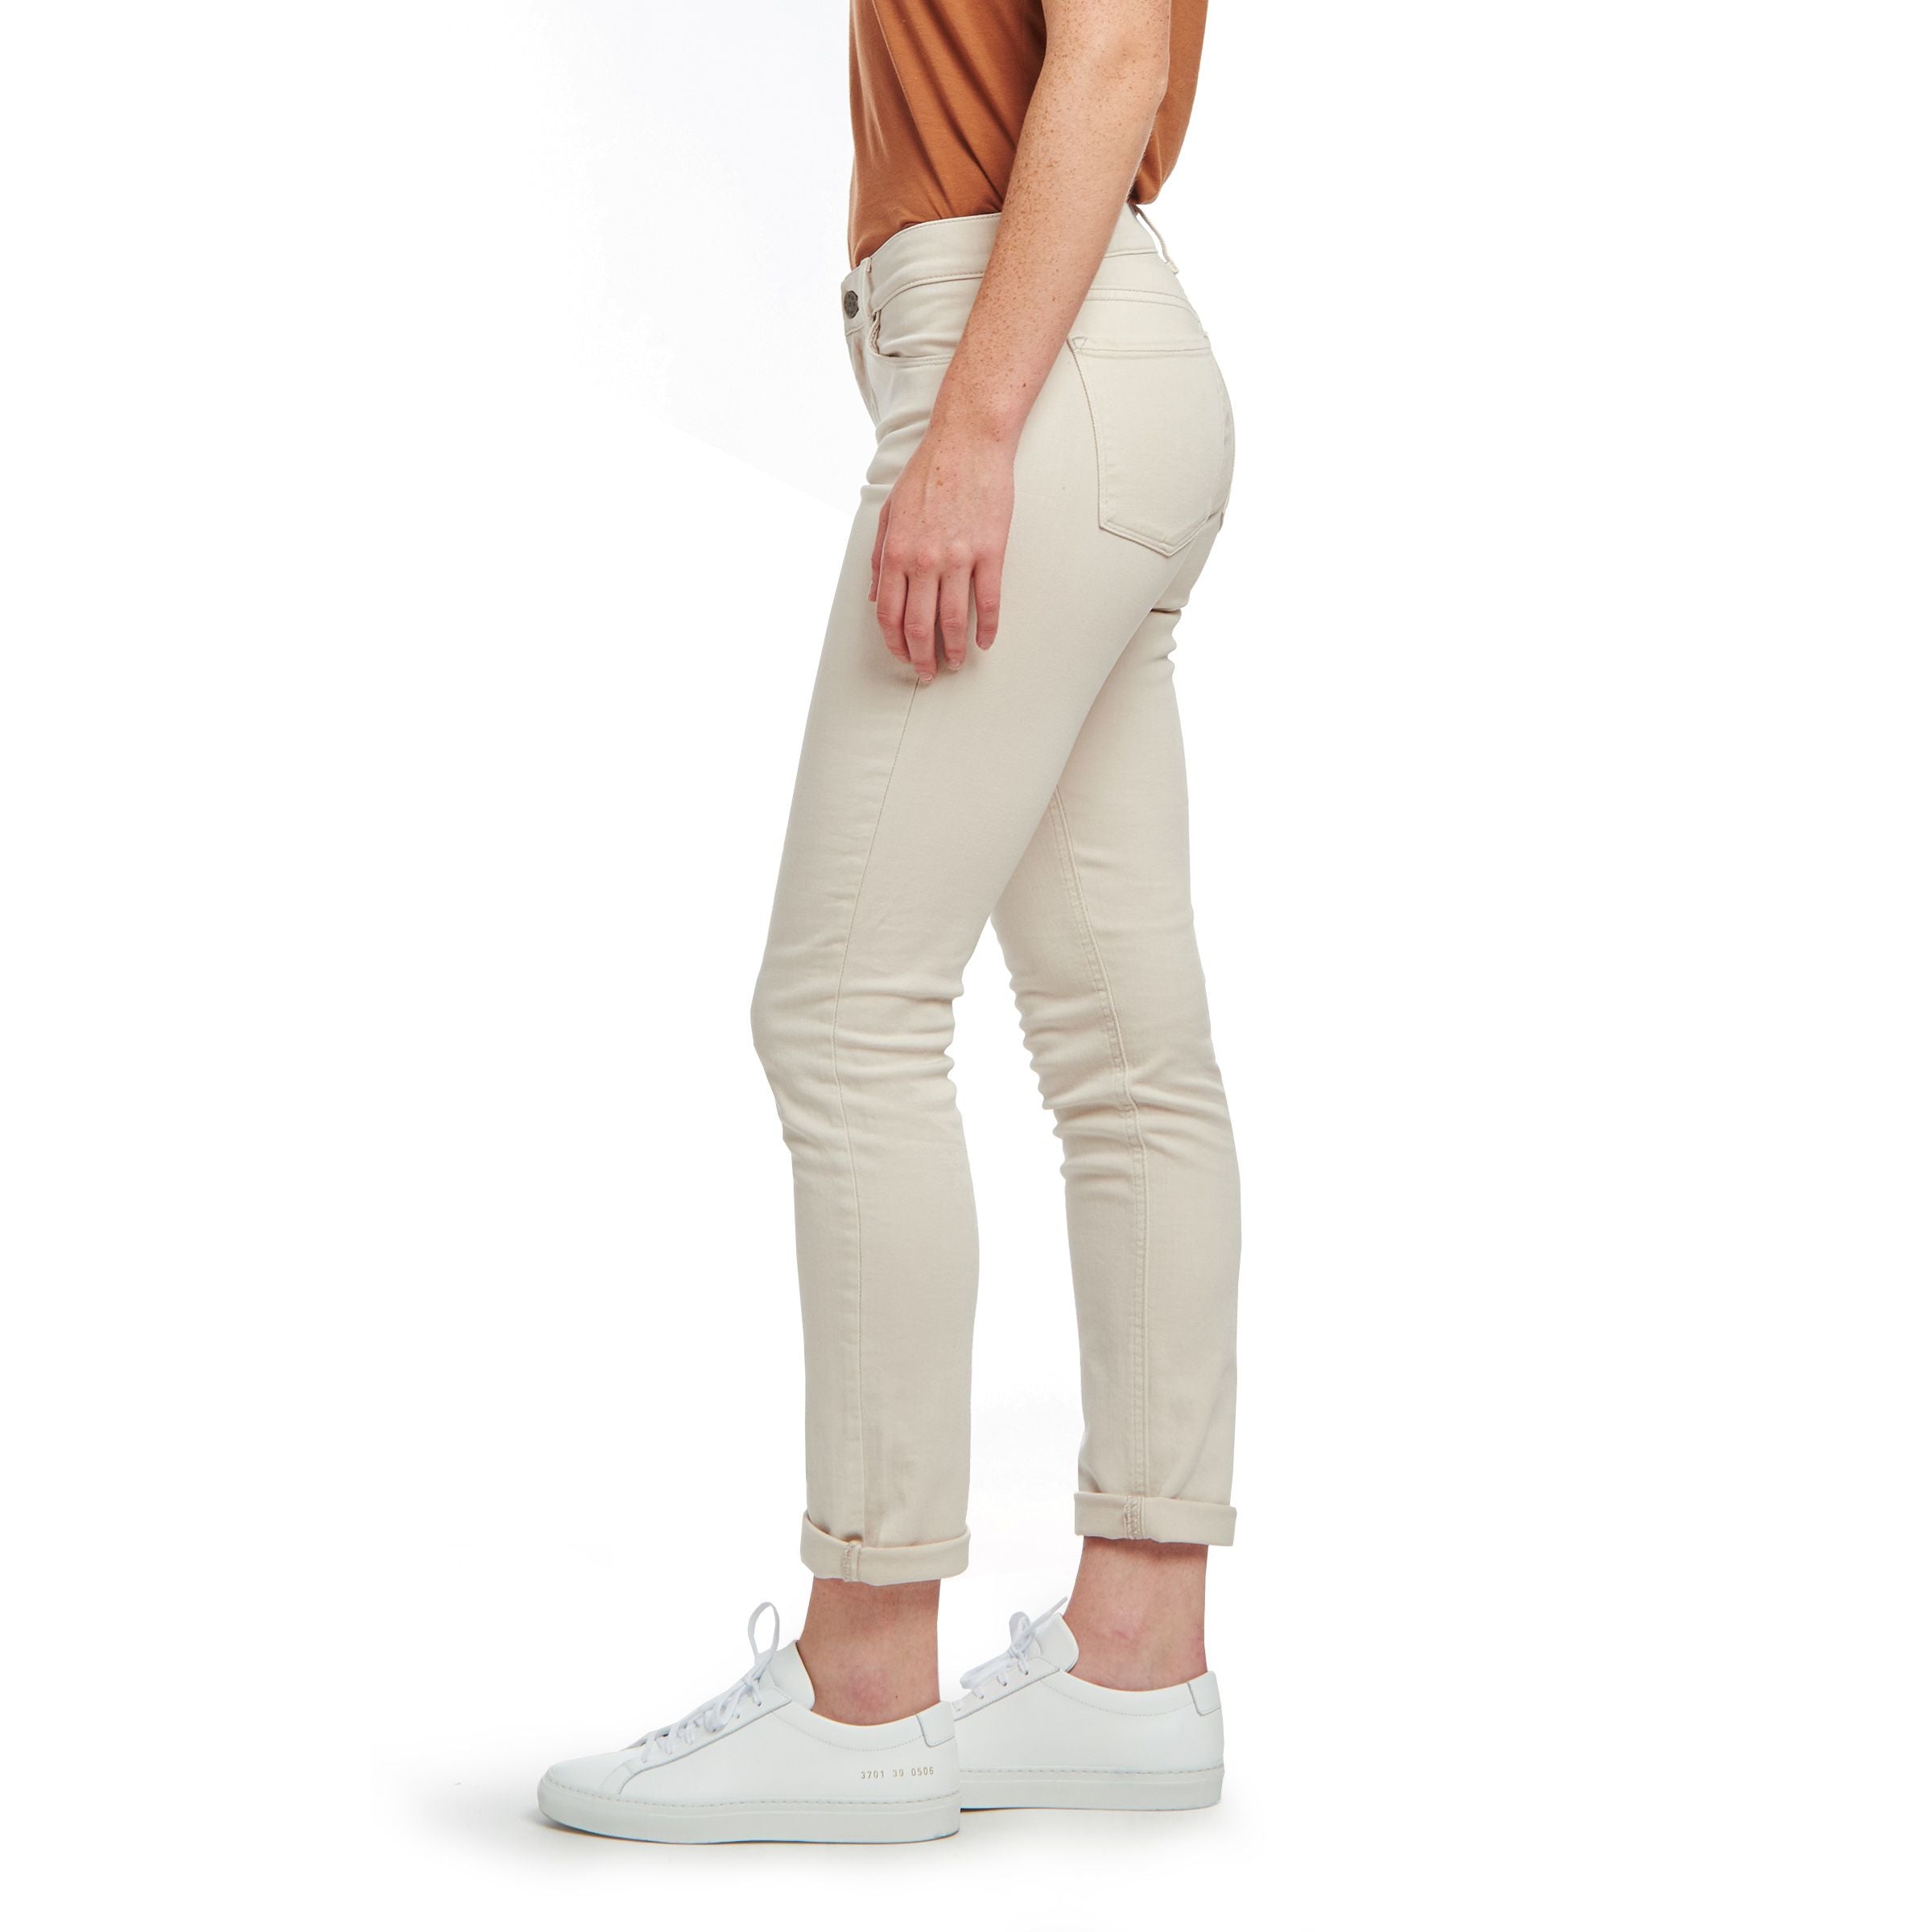 Women's Slim Straight Mercer Jeans - Mott & Bow